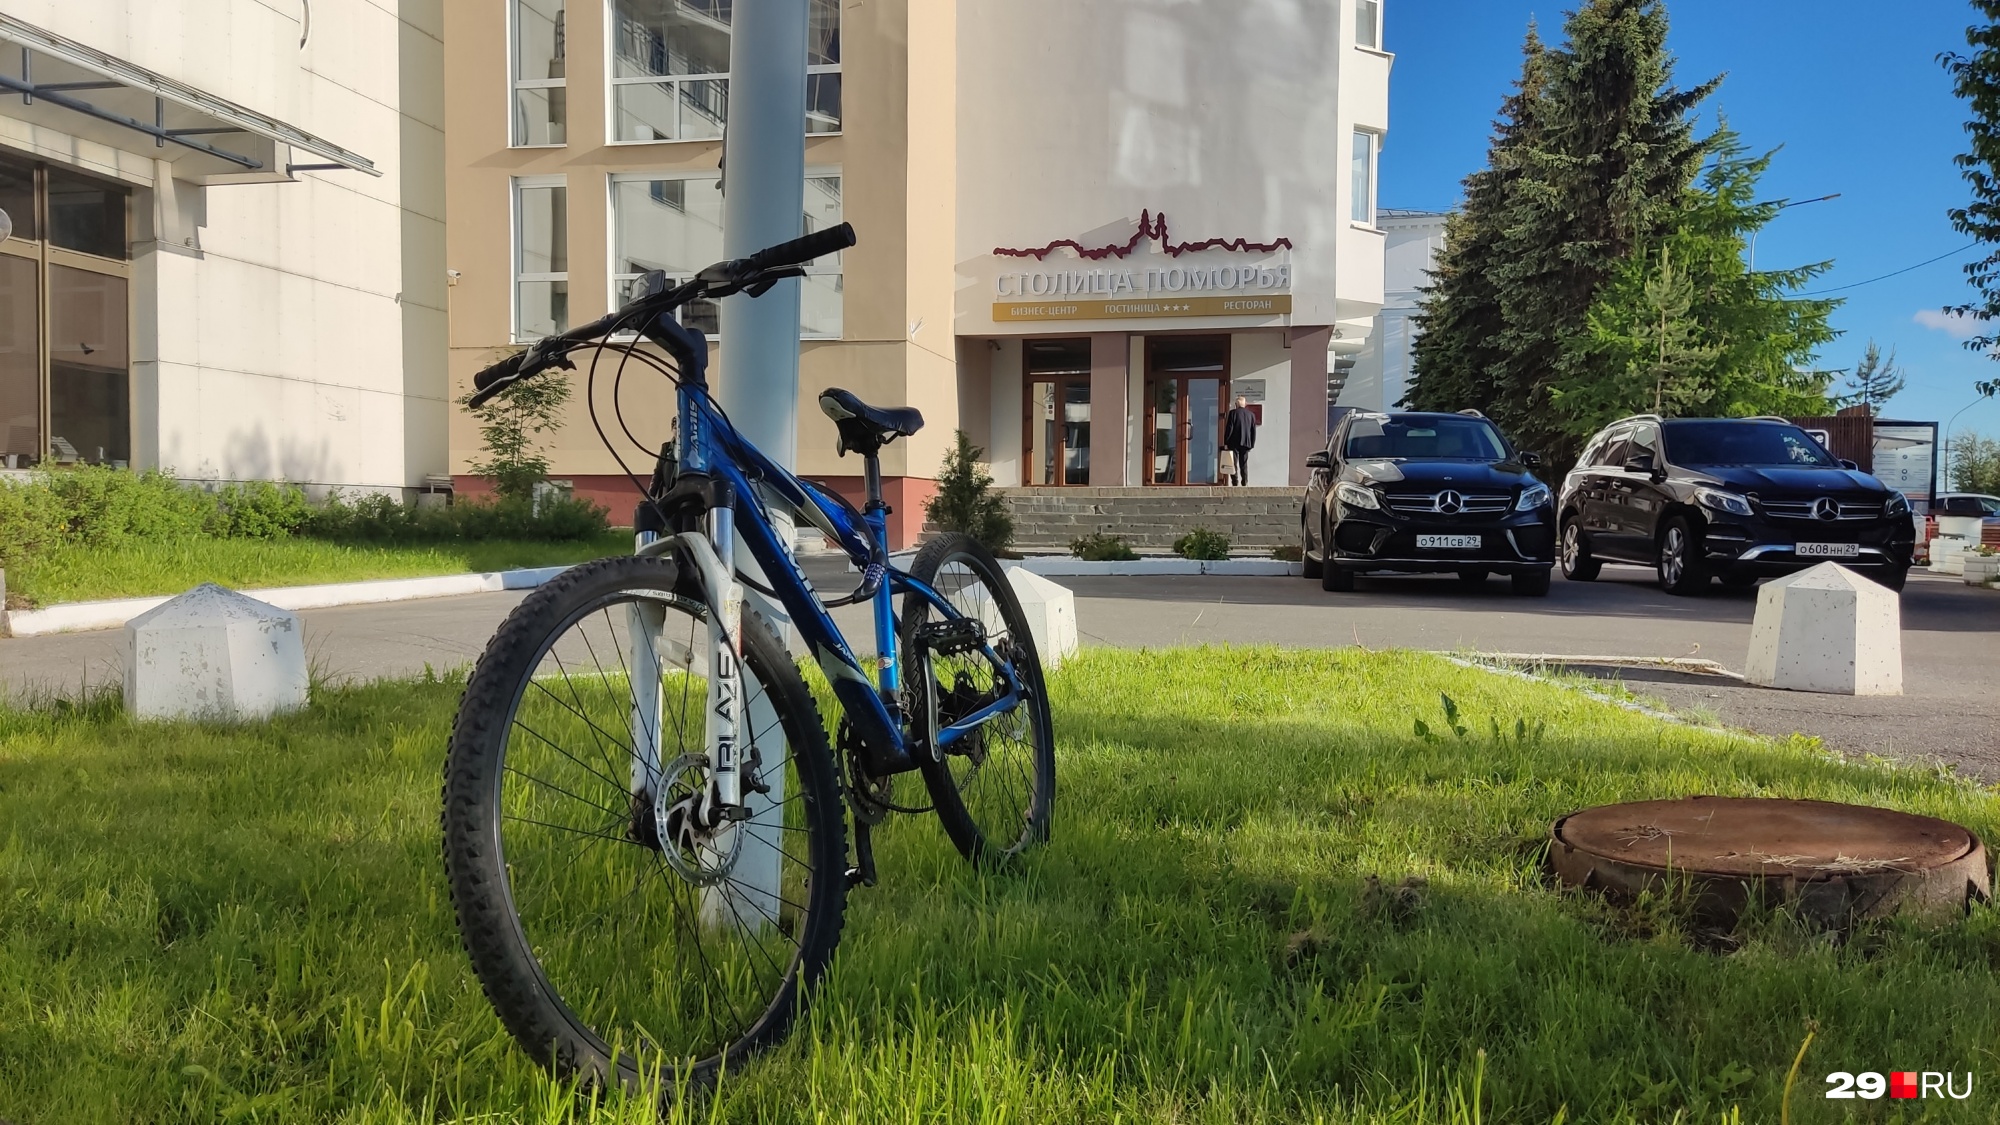 Арендовать велосипед в гостинице можно через ресепшен